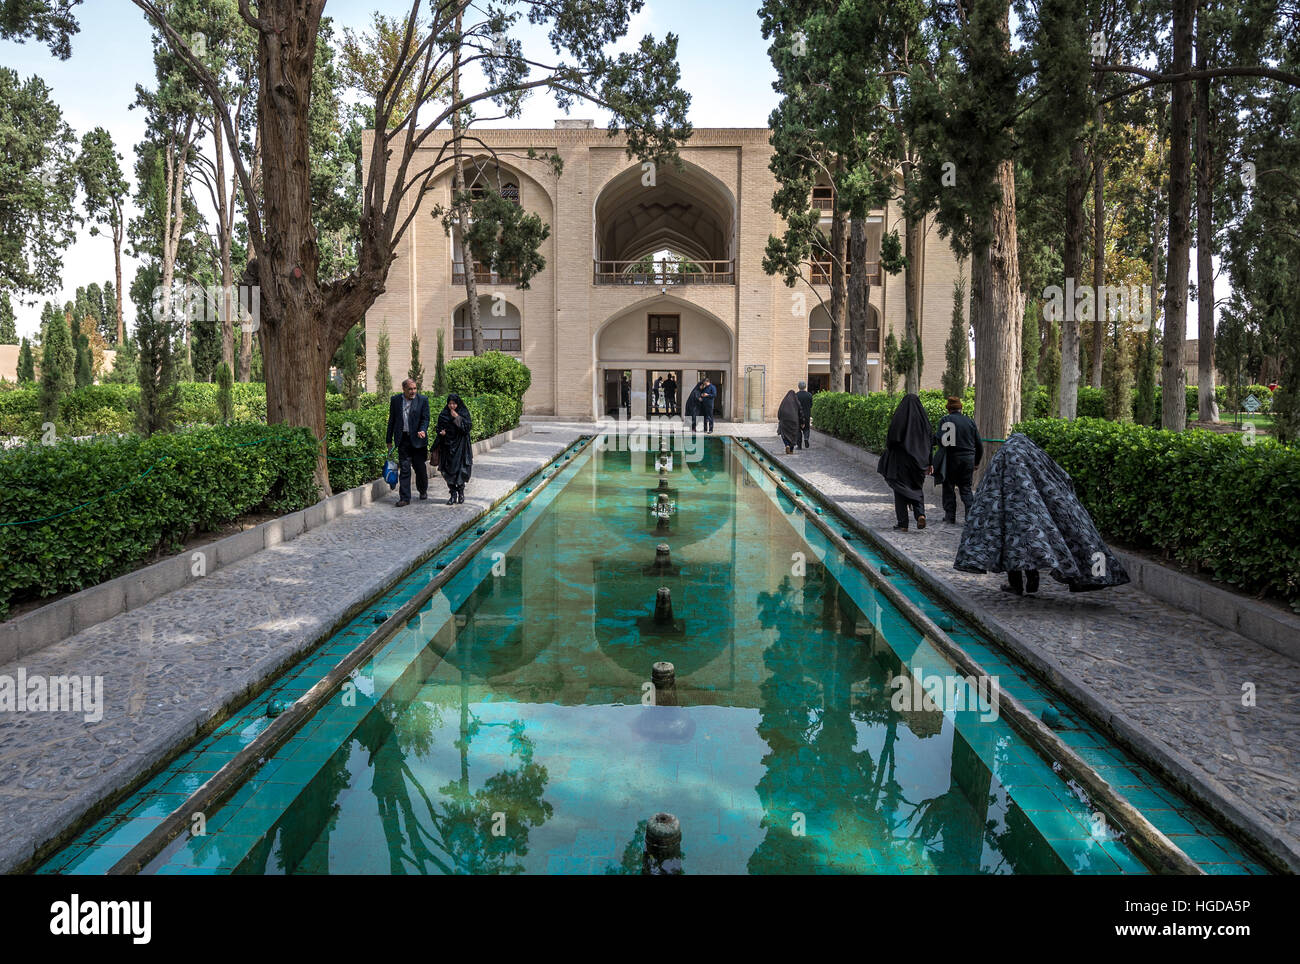 Piscine dans le jardin persan subsistant plus ancienne dans l'Iran a appelé Fin (Jardin Bagh-e Fin), situé dans la ville de Kashan Banque D'Images